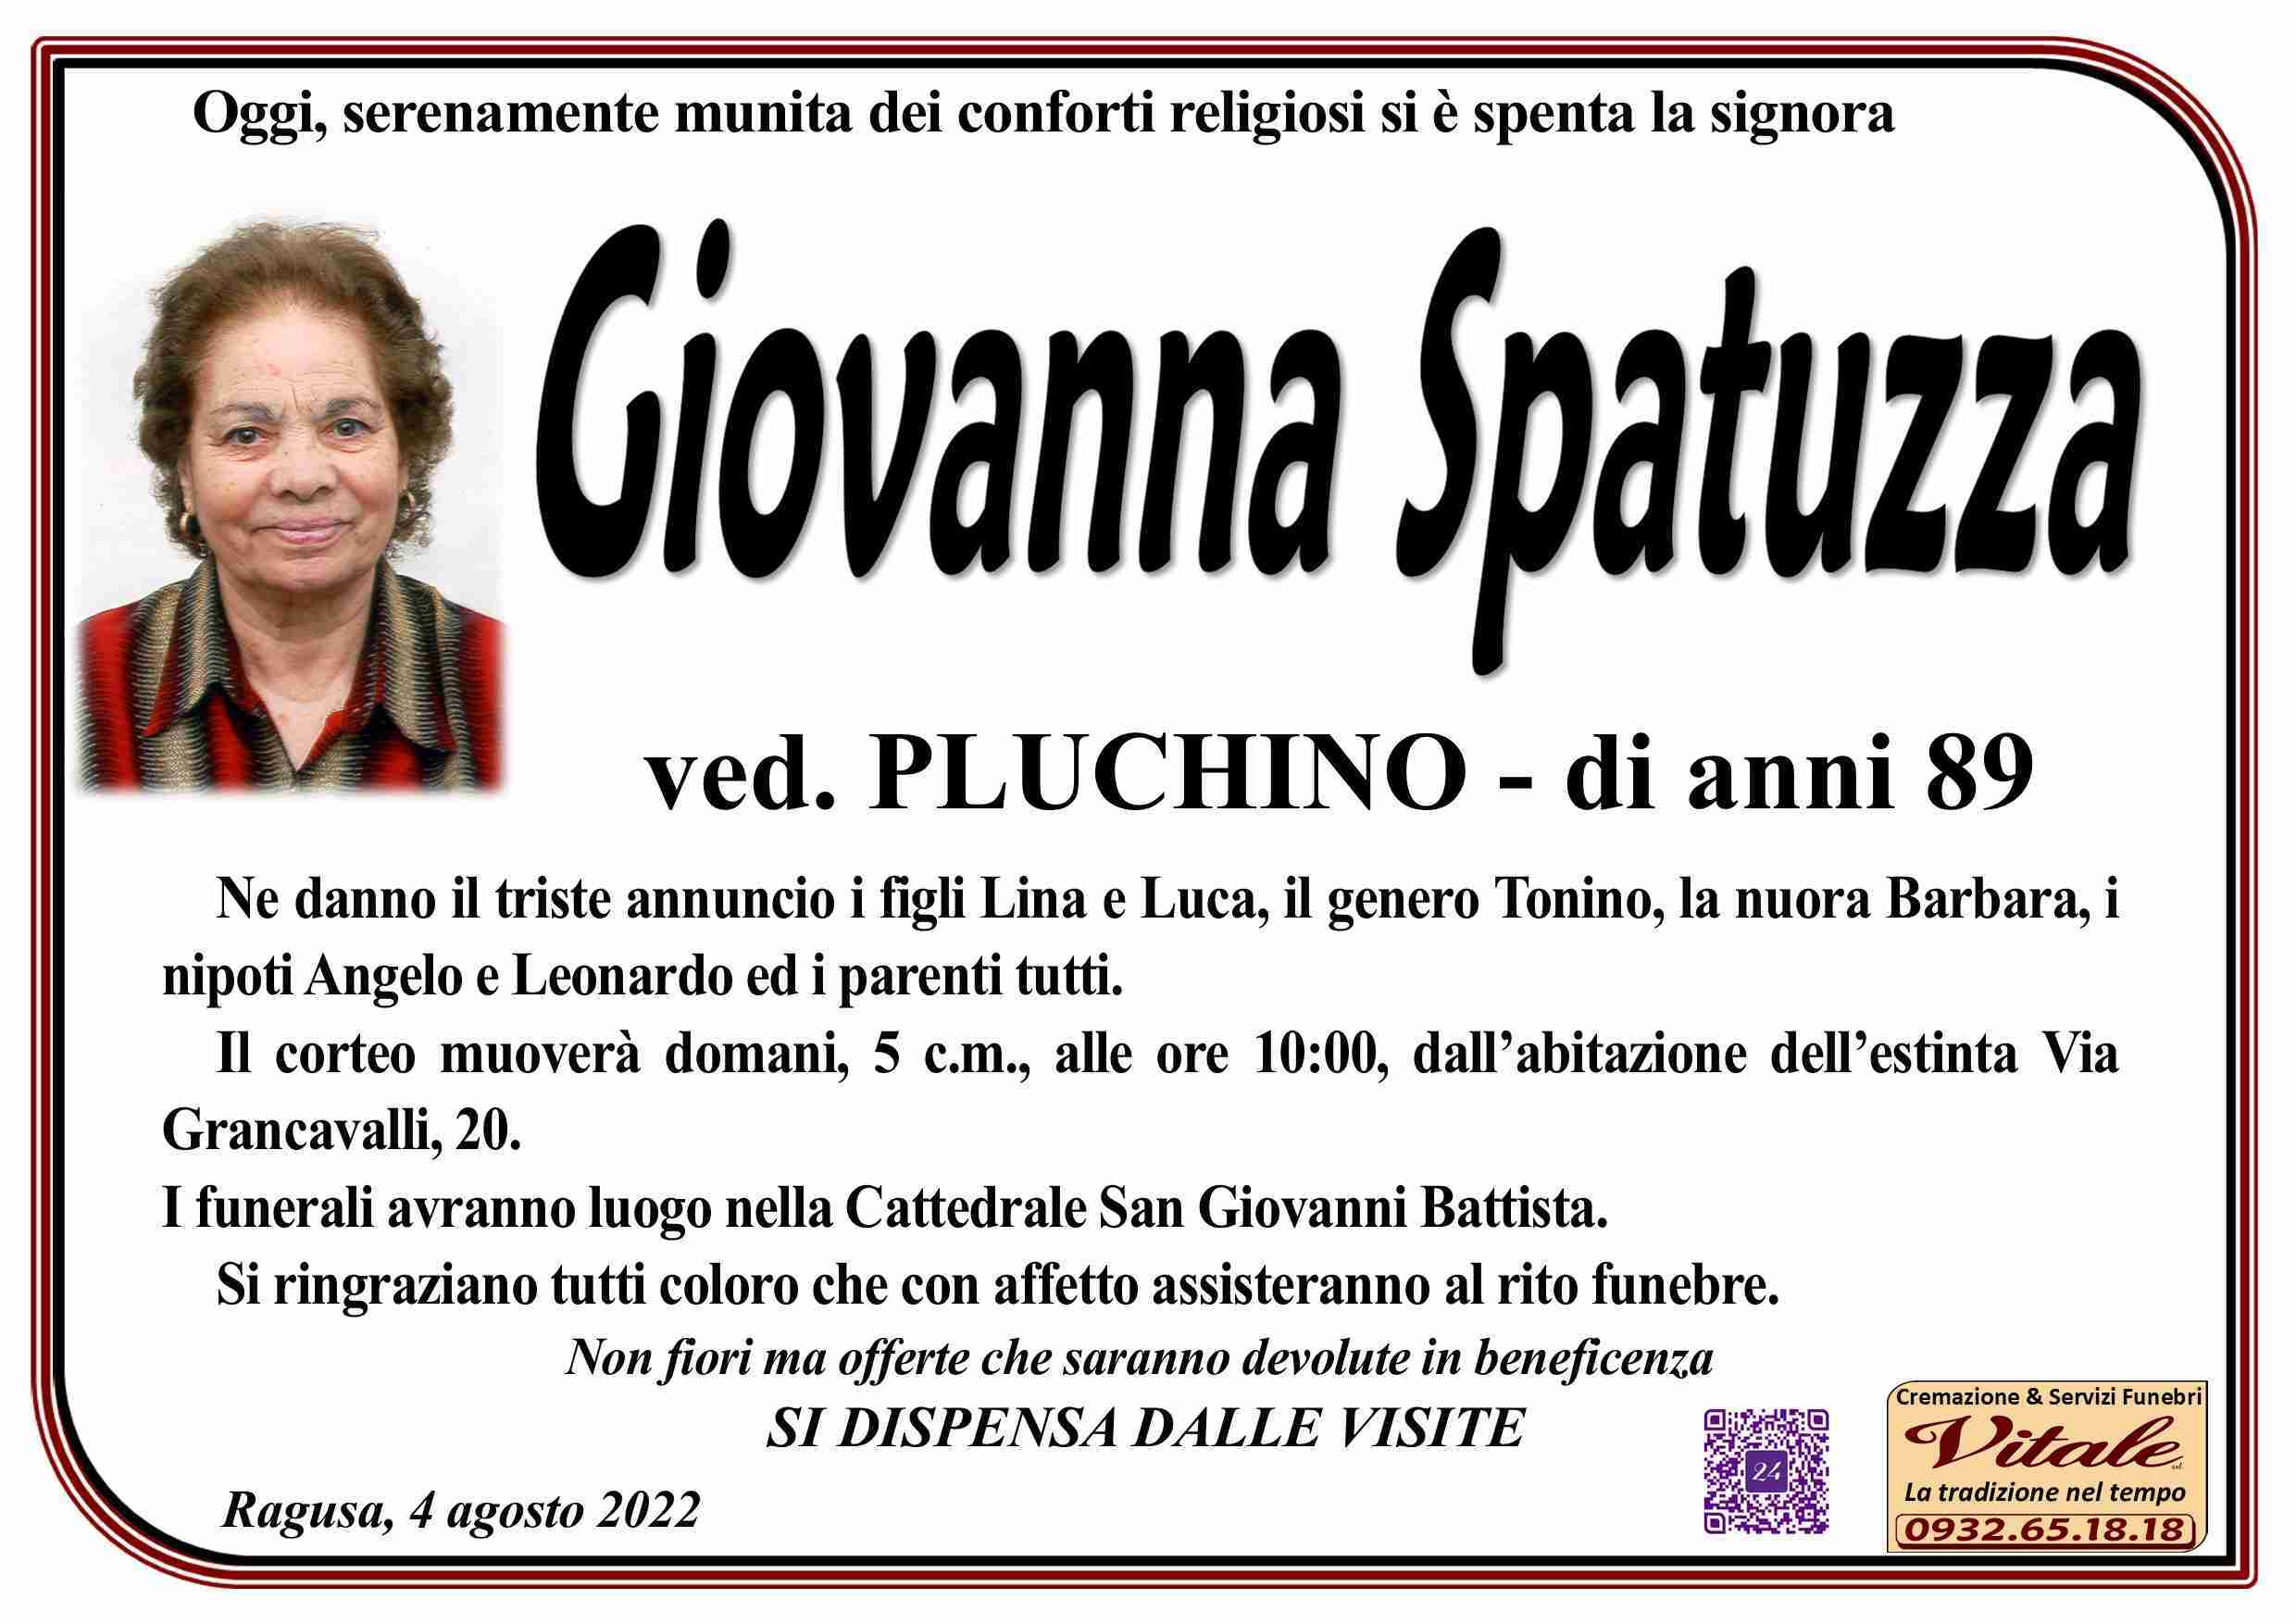 Giovanna Spatuzza